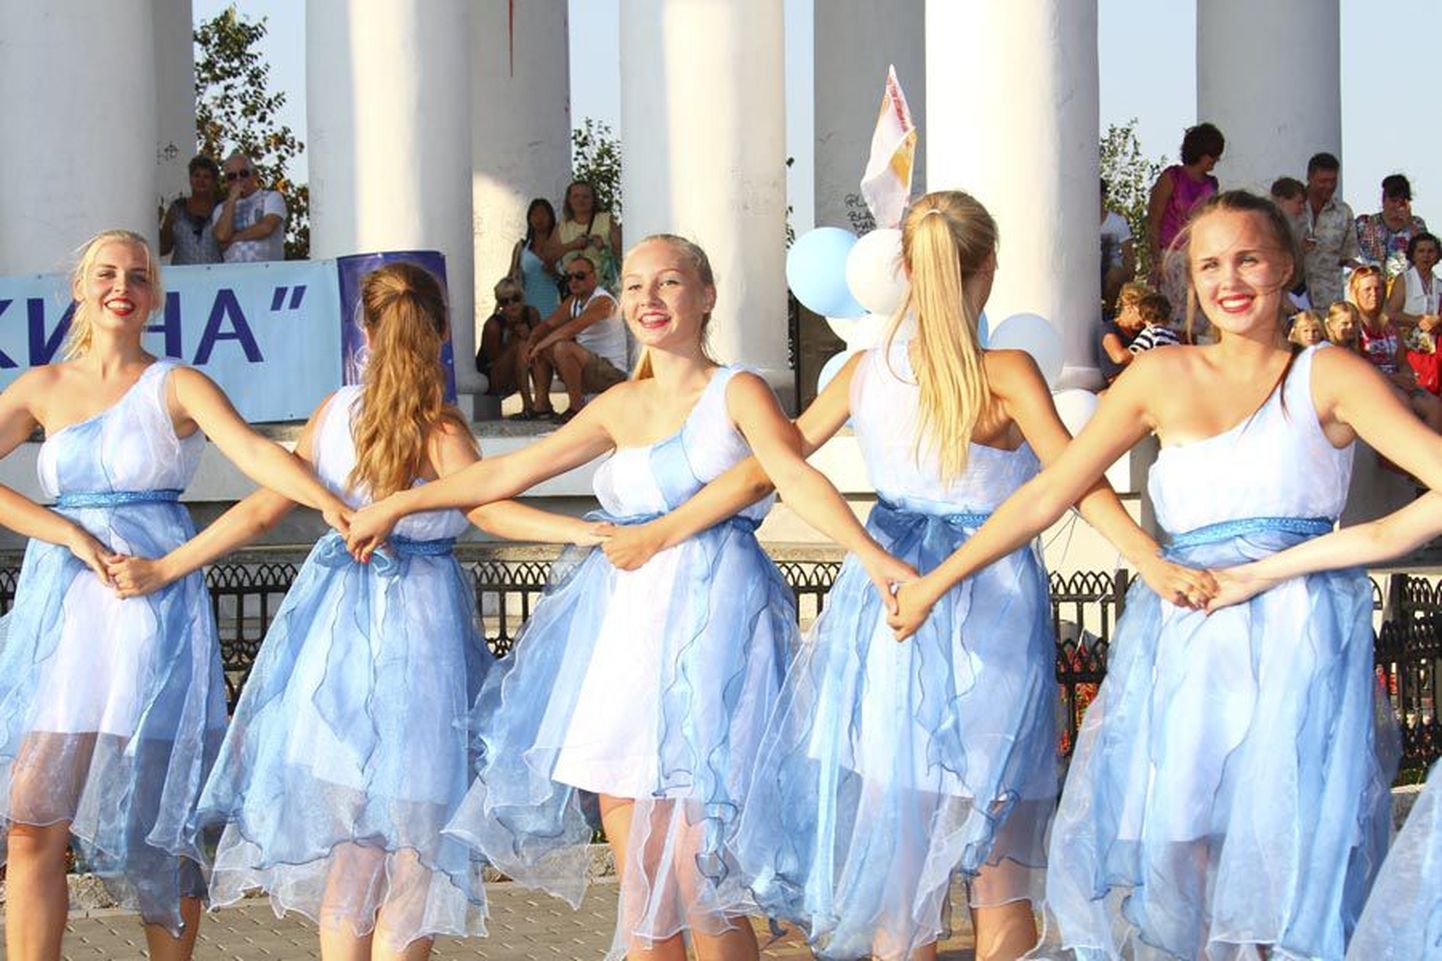 Jakobsoni kooli balletistuudio osales Odessas peetud rahvusvahelisel festivalil. Galakontserti on võimalik vaadata aadressil www.festival-dal.com.